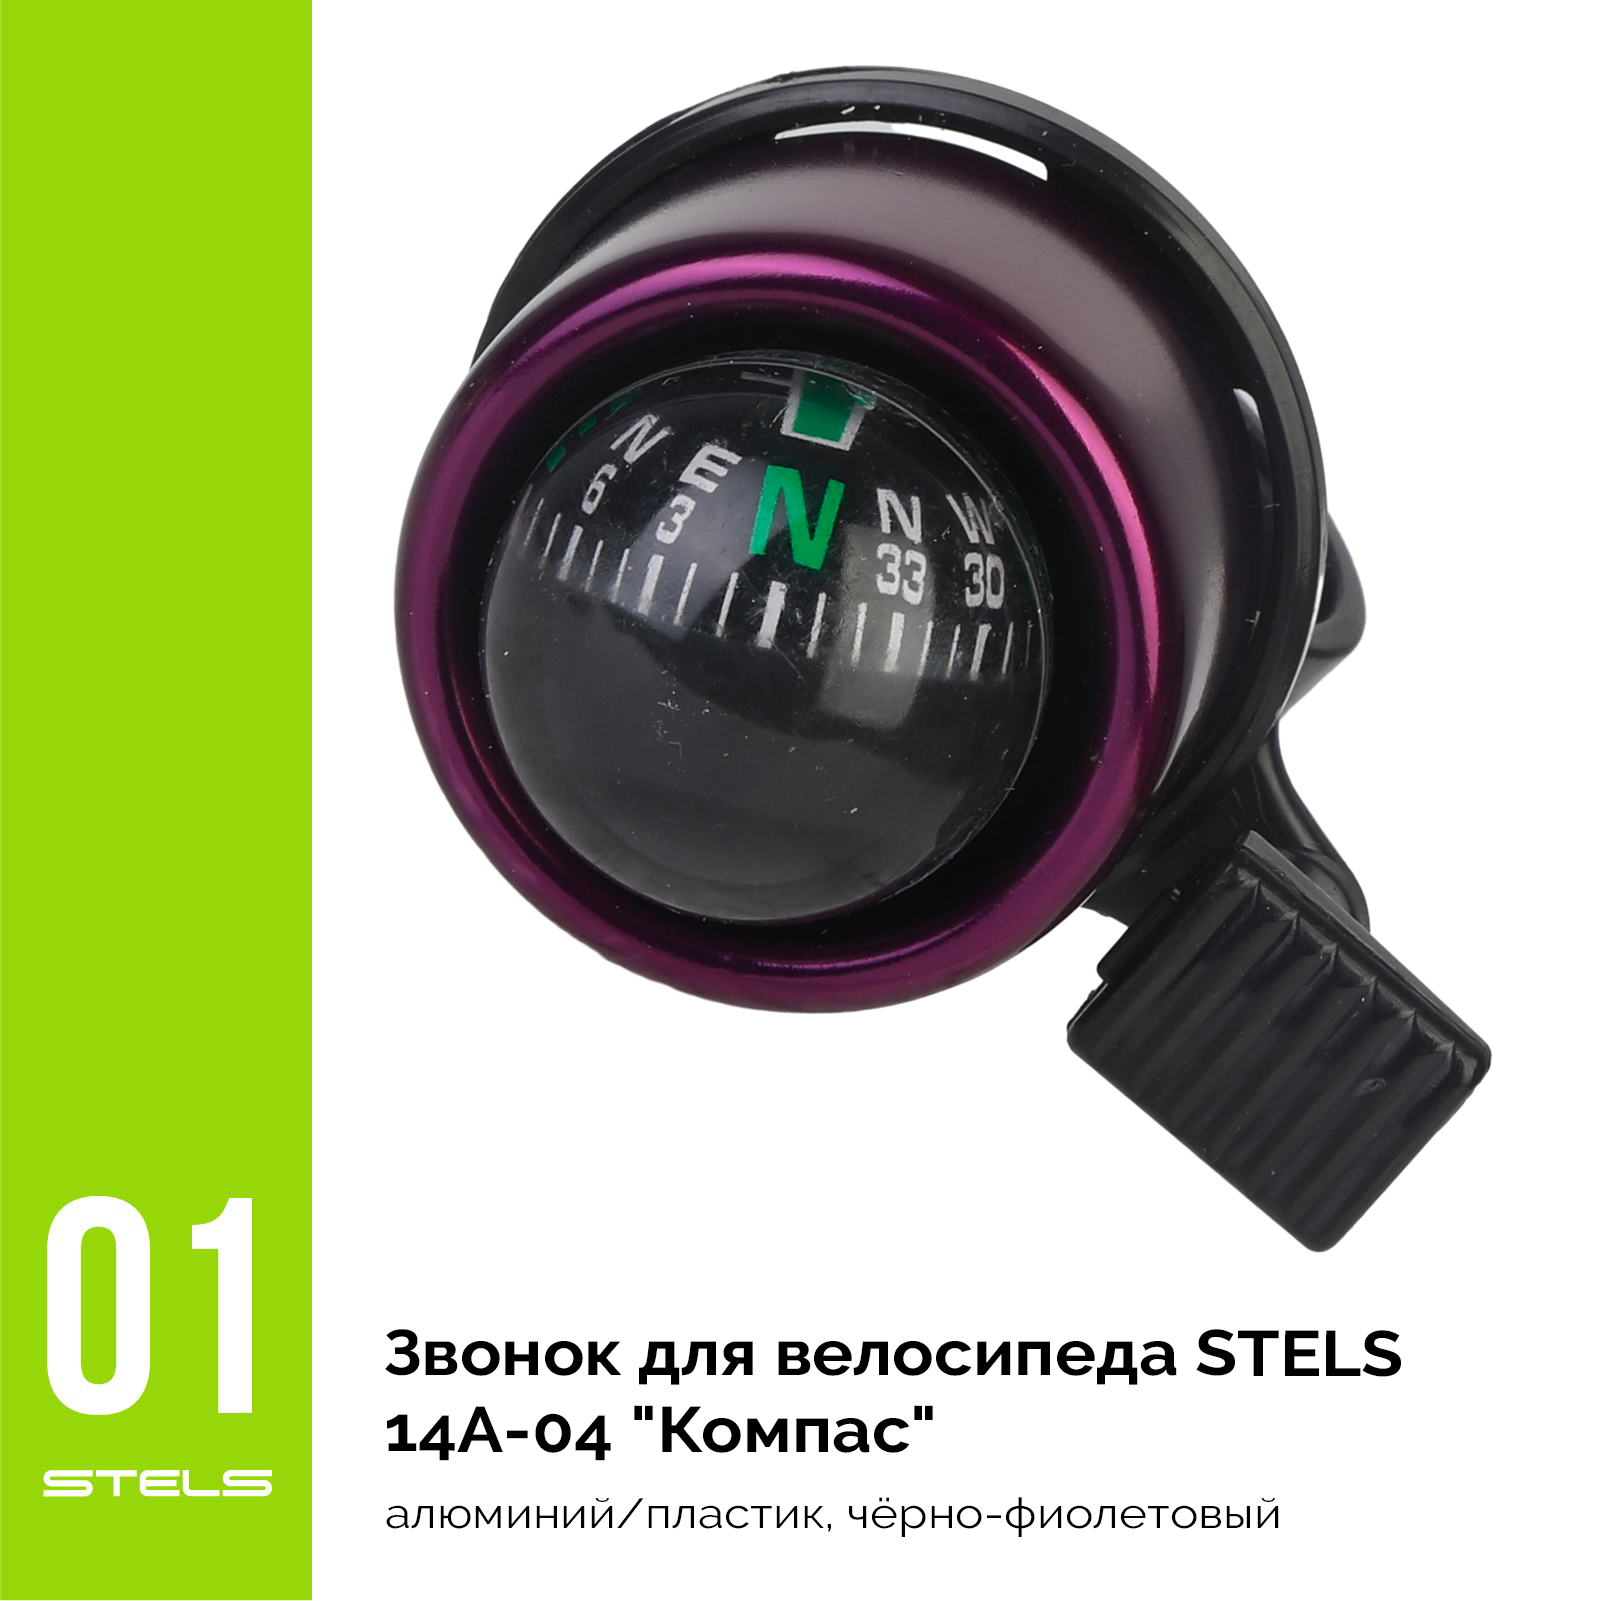 Звонок для велосипеда STELS 14A-04 "Компас" алюминий/пластик, чёрно-фиолетовый